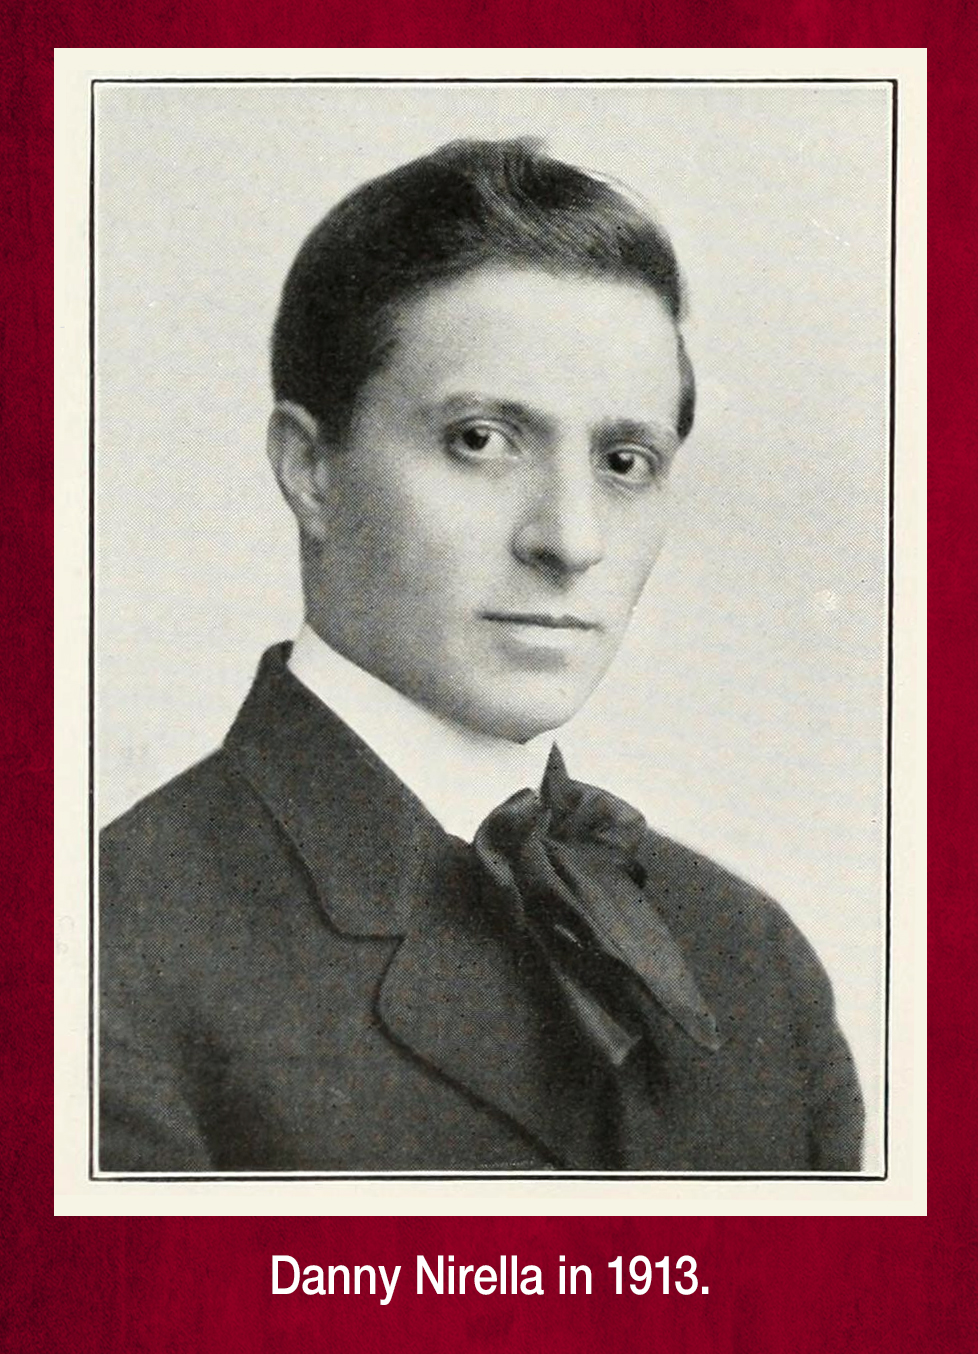 Portrait of Danny Nirella in 1913.